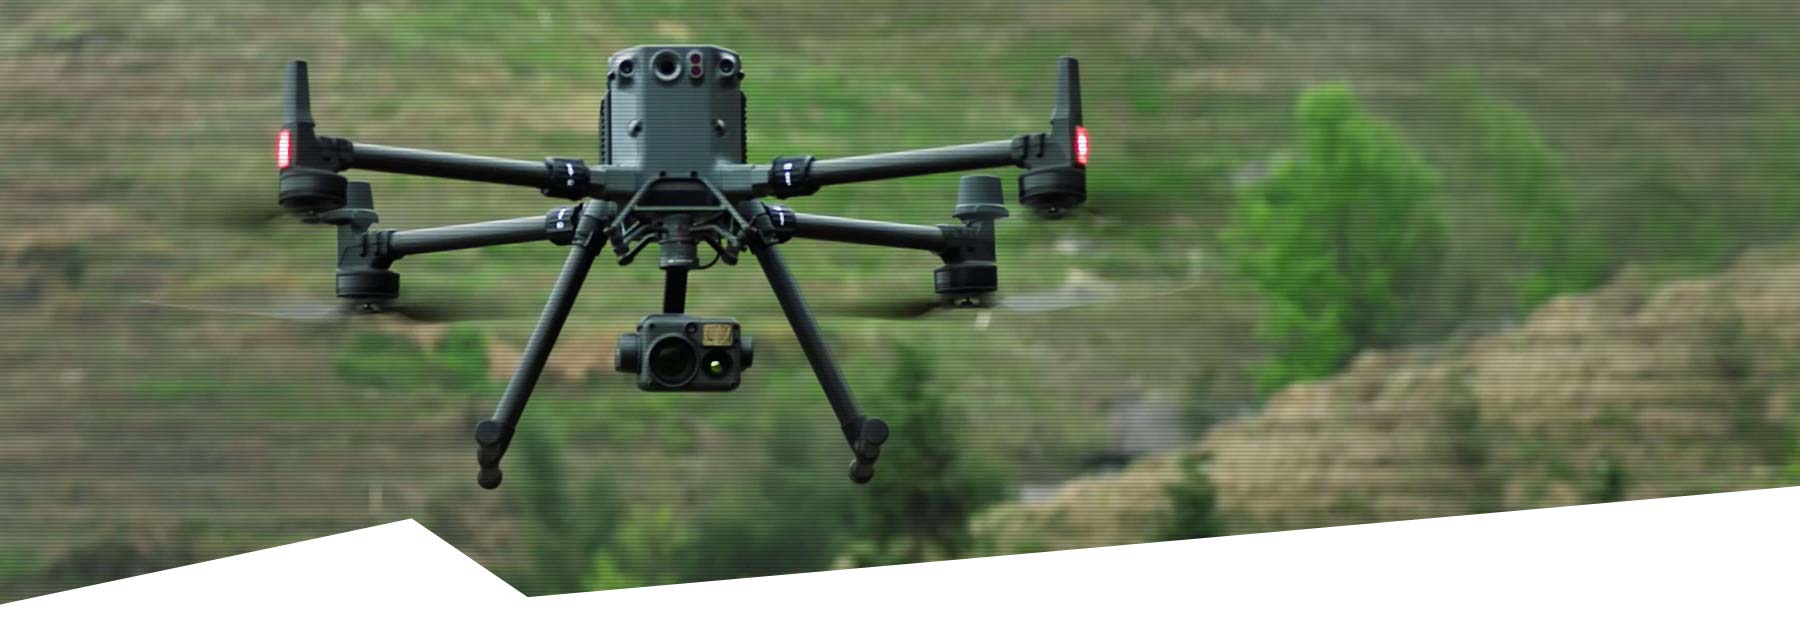 DJI survey drone